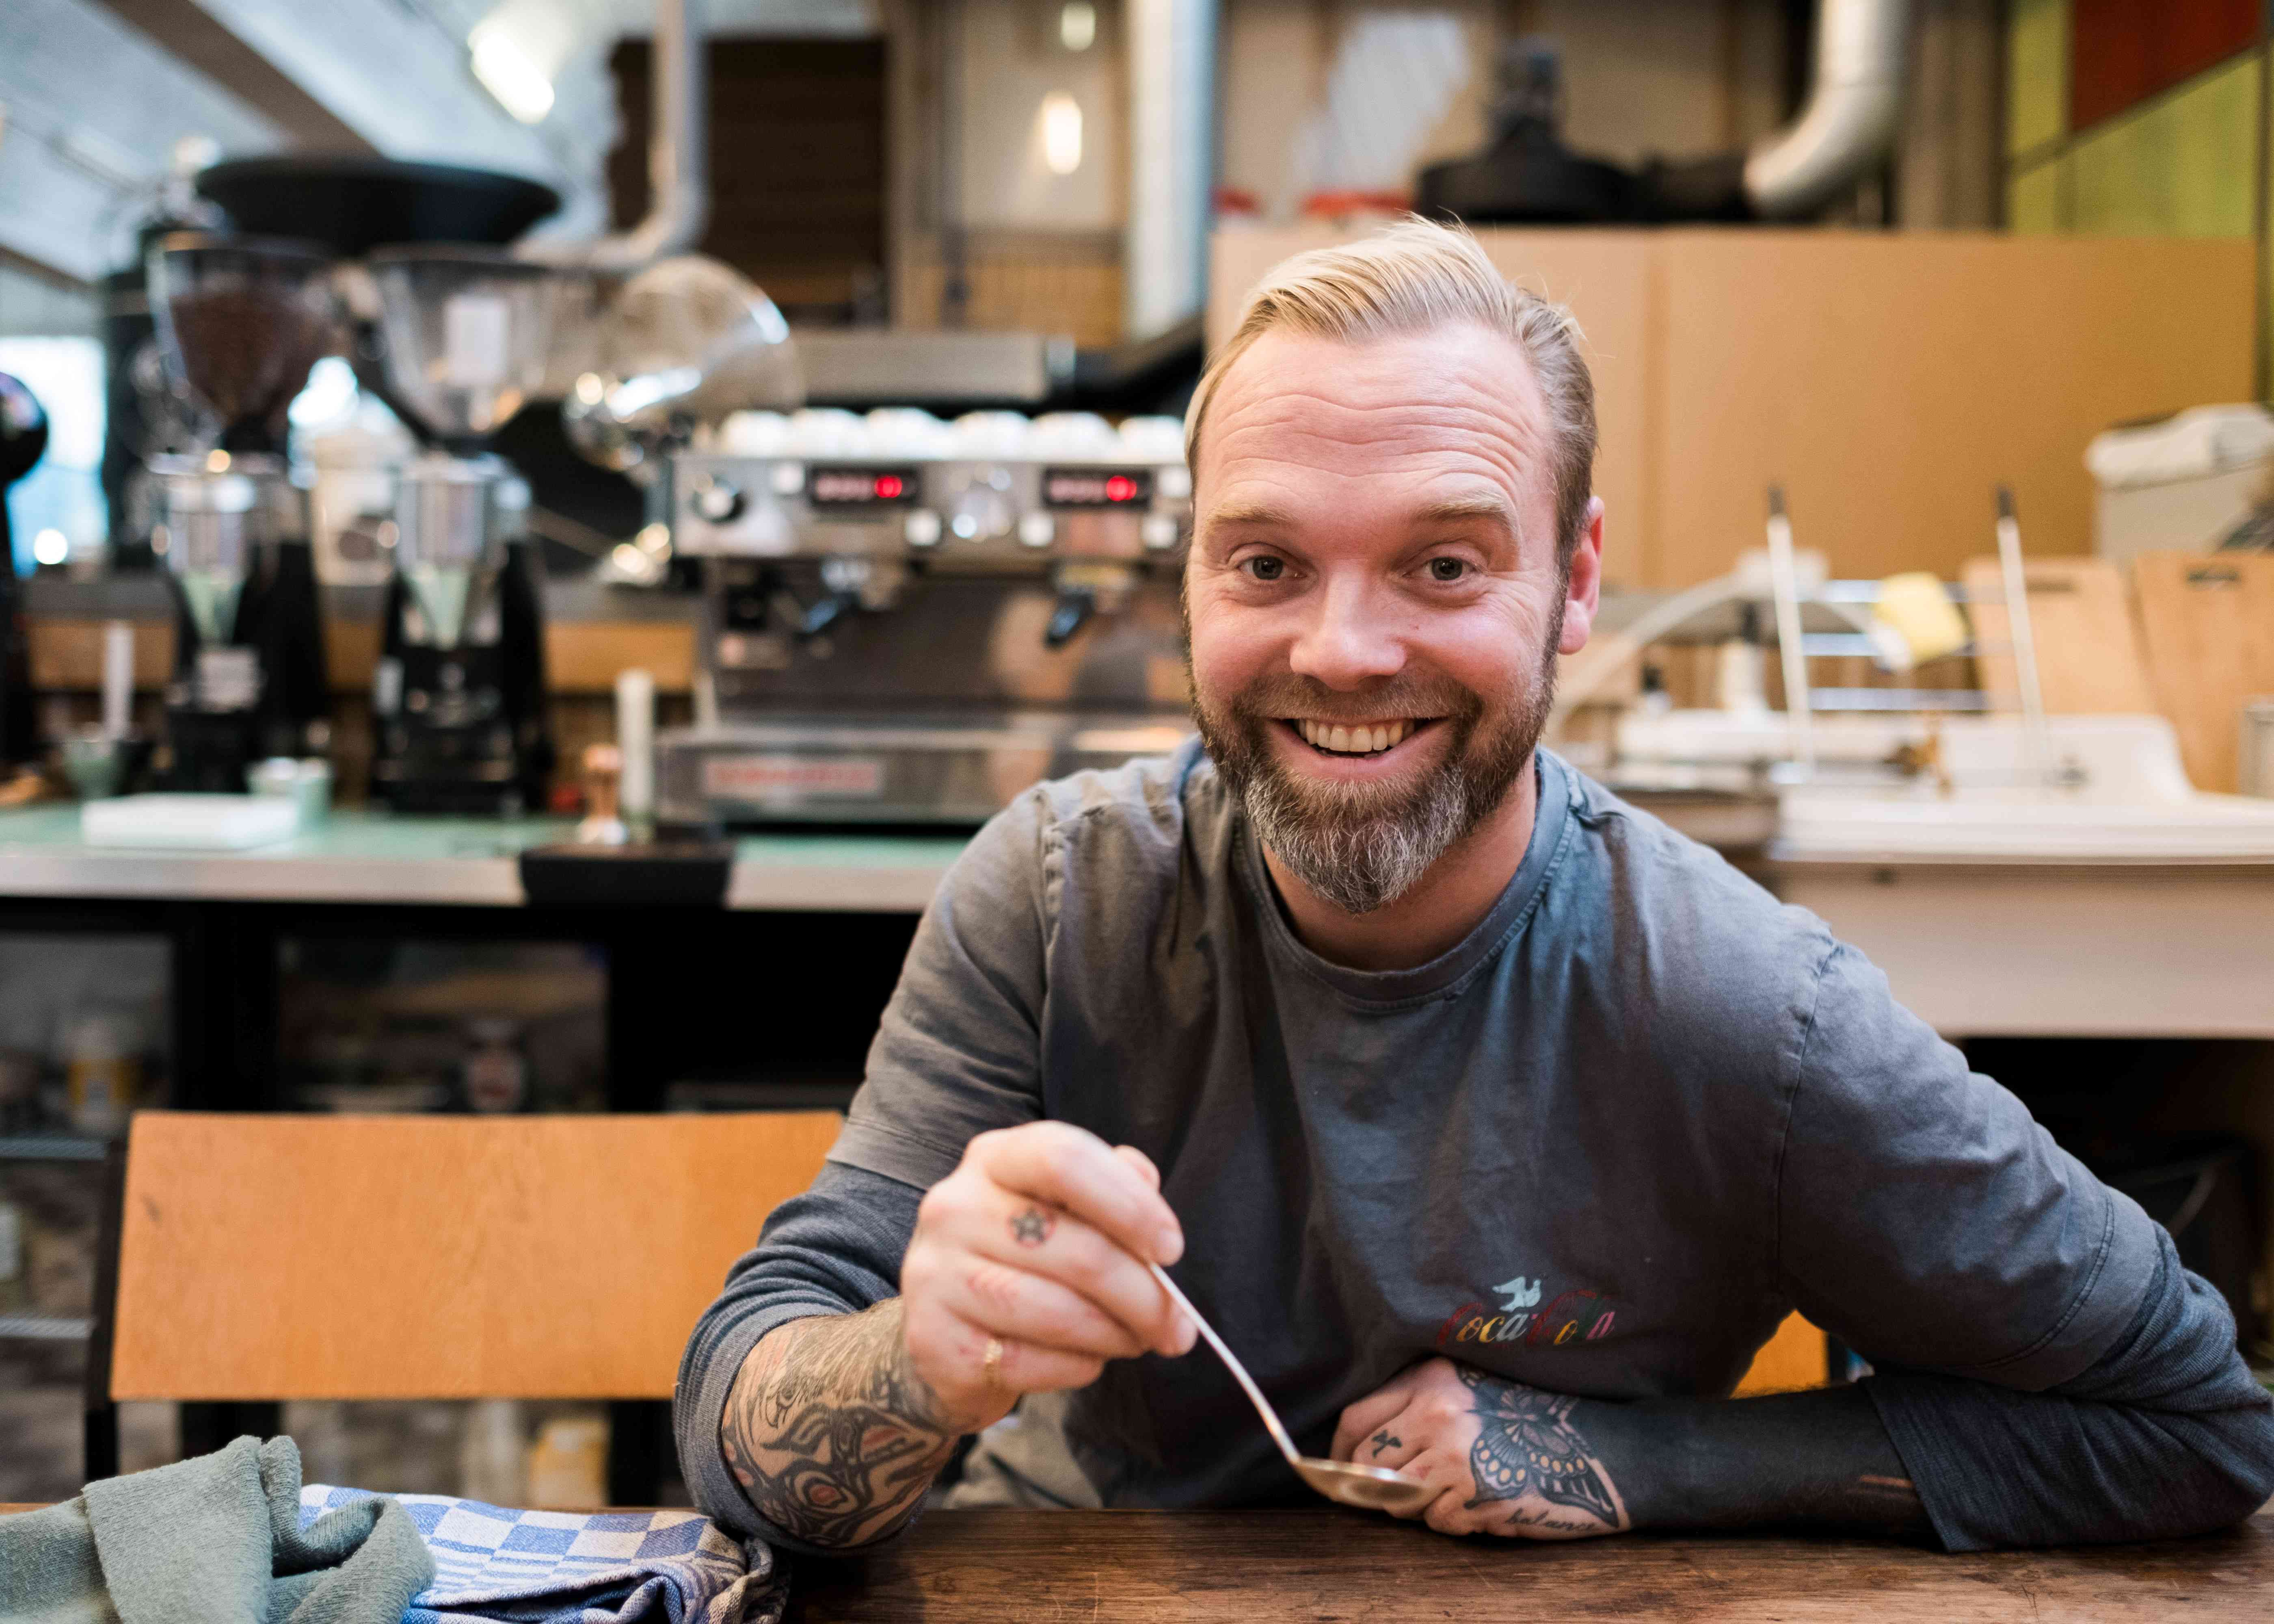 Michael van Eekeren opent koffiebar met yogahub in De Bilt